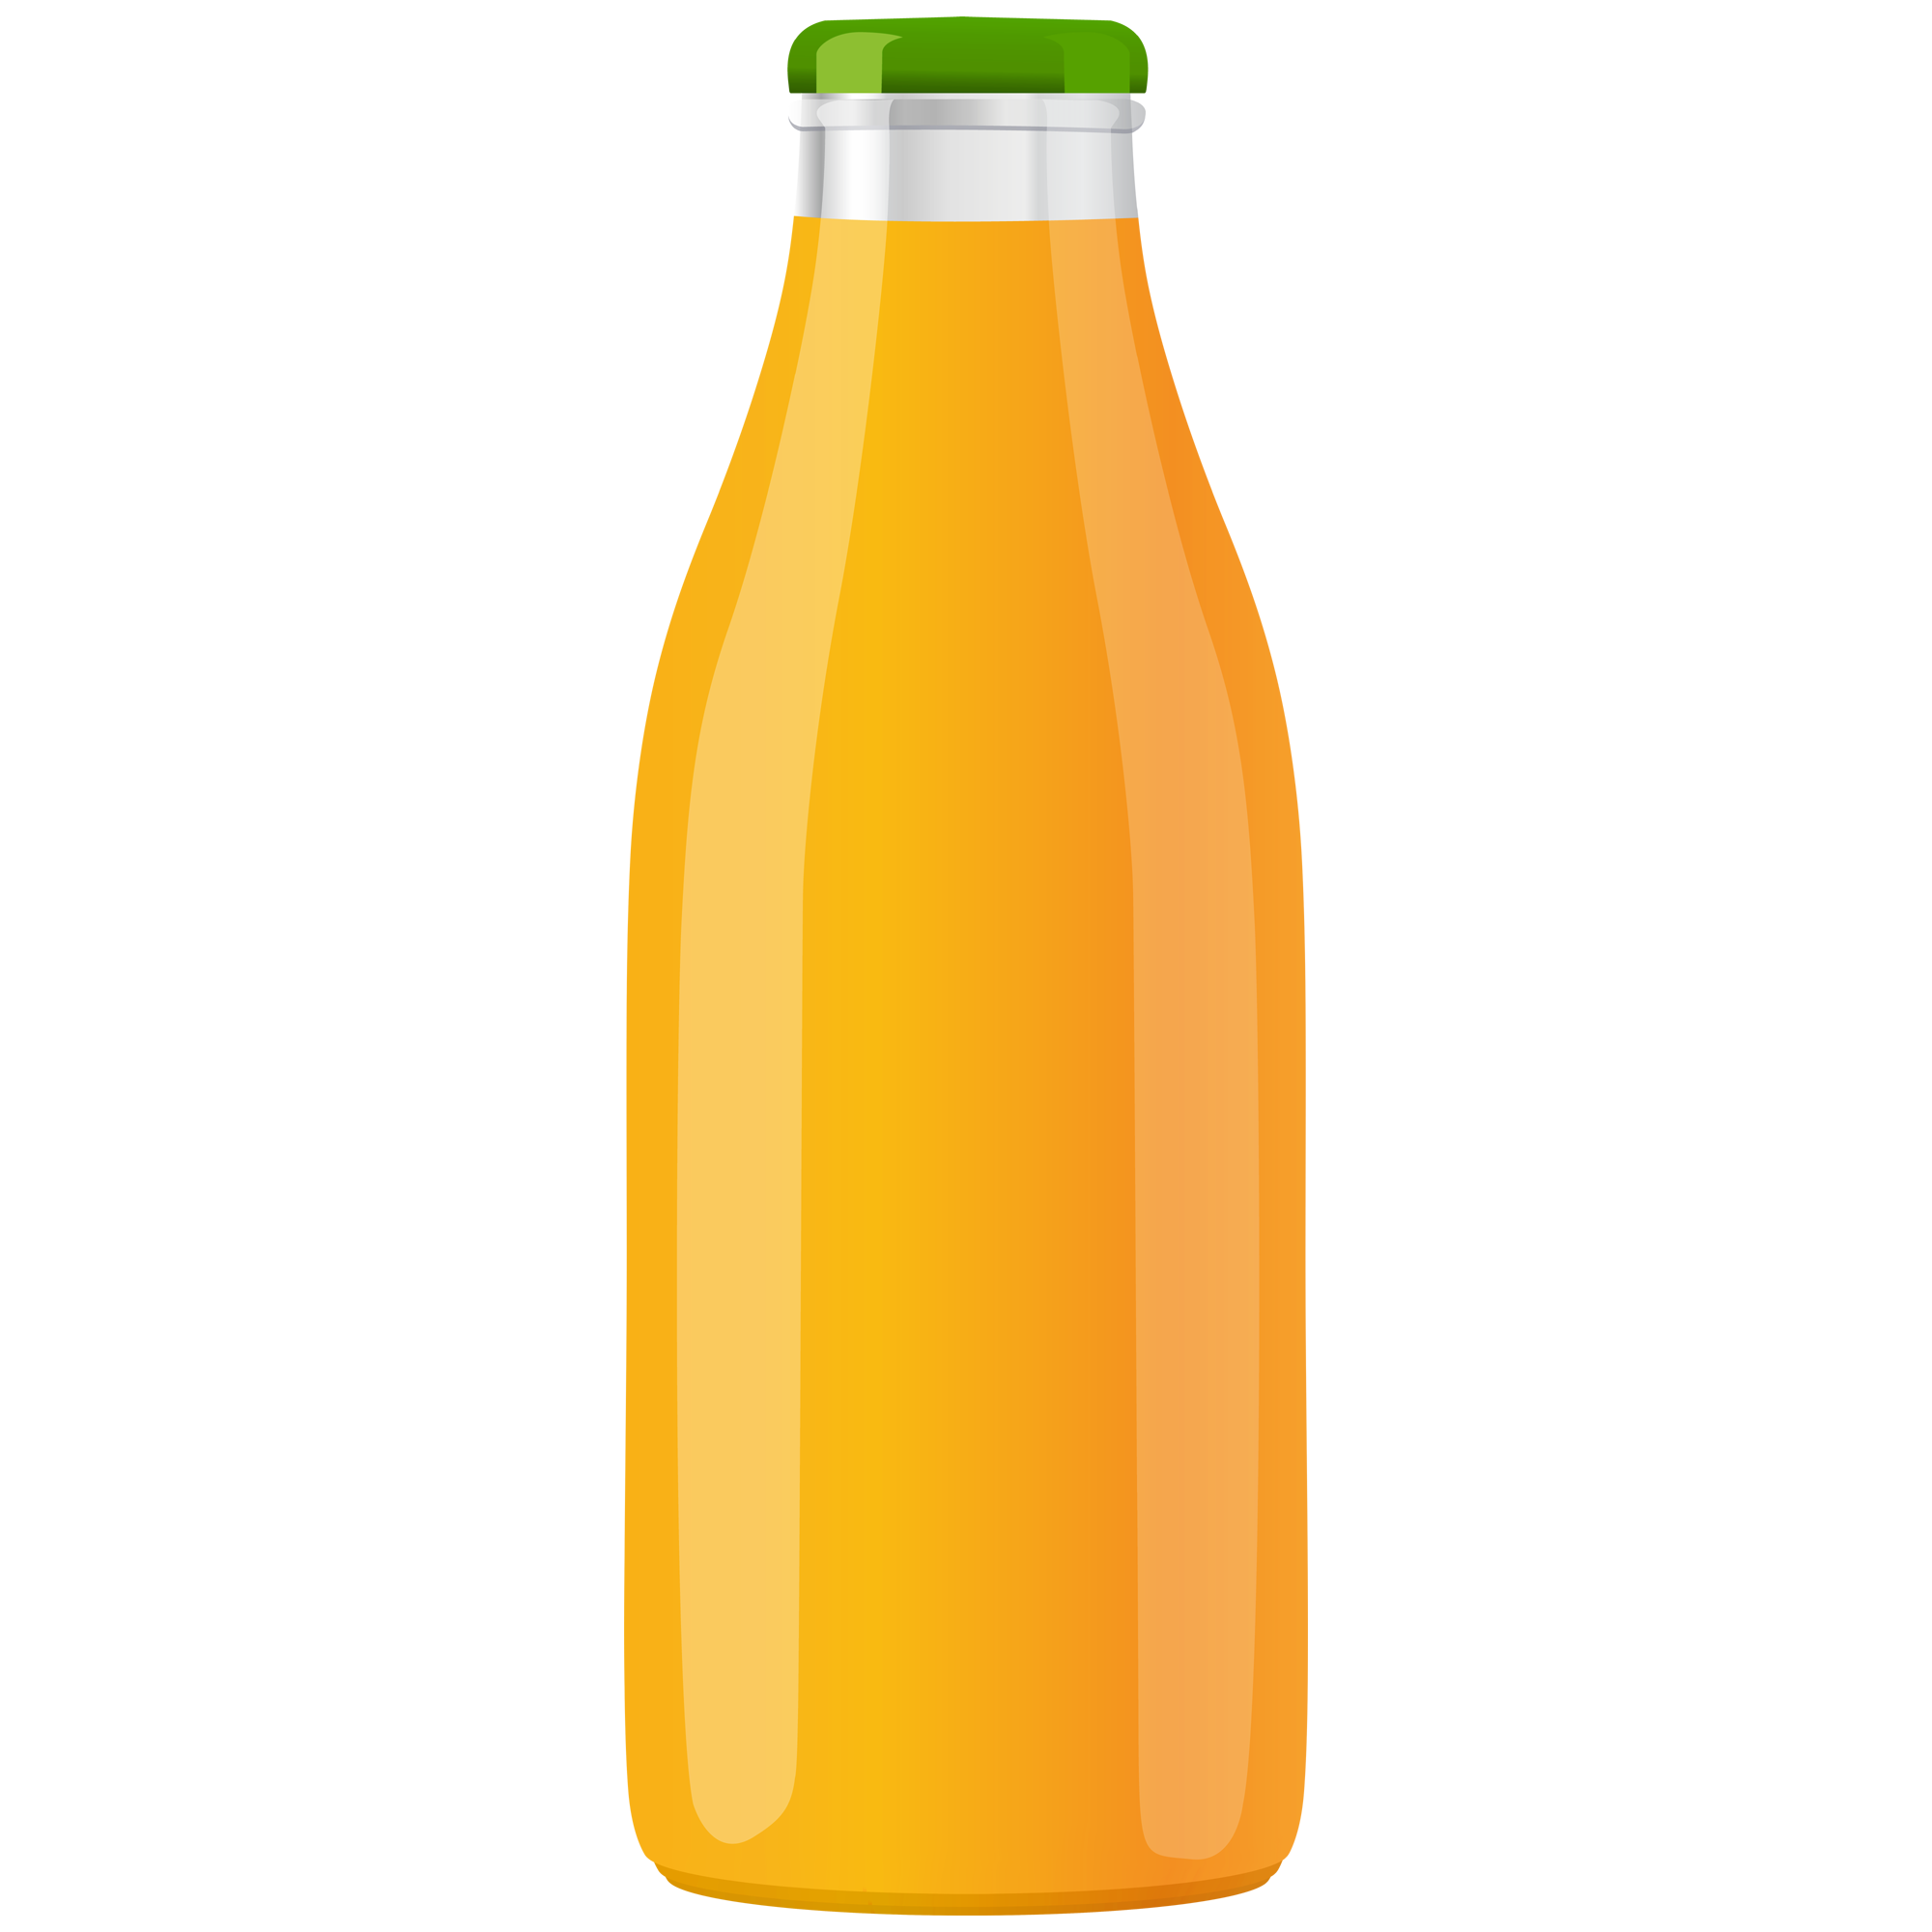 Juice Bottle  Transparent Clipart